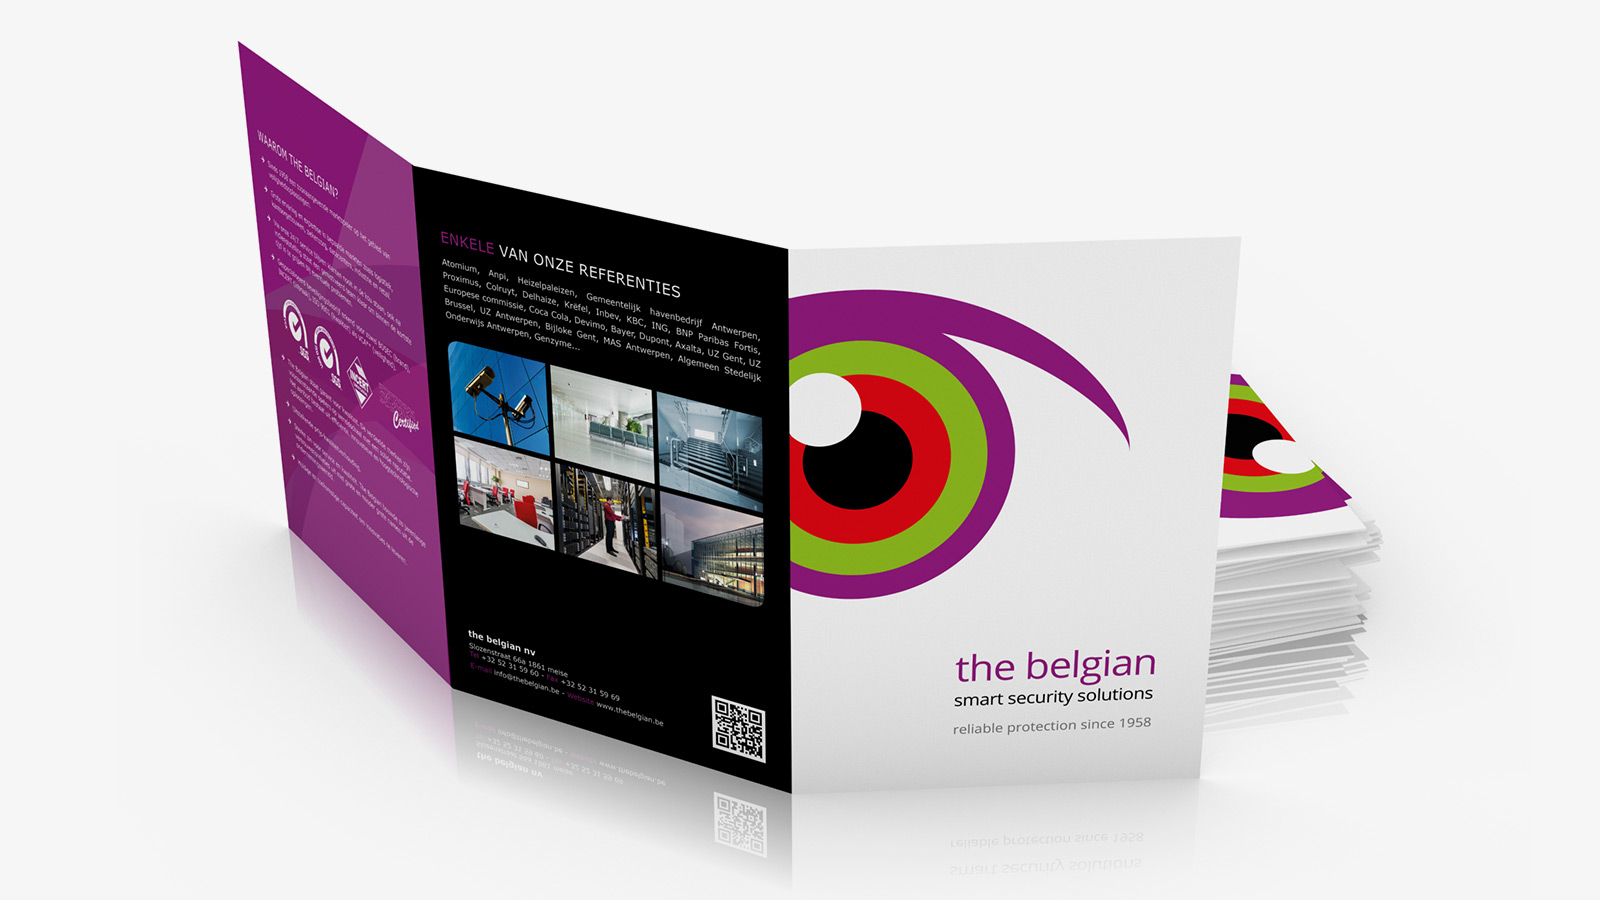 The Belgian folder